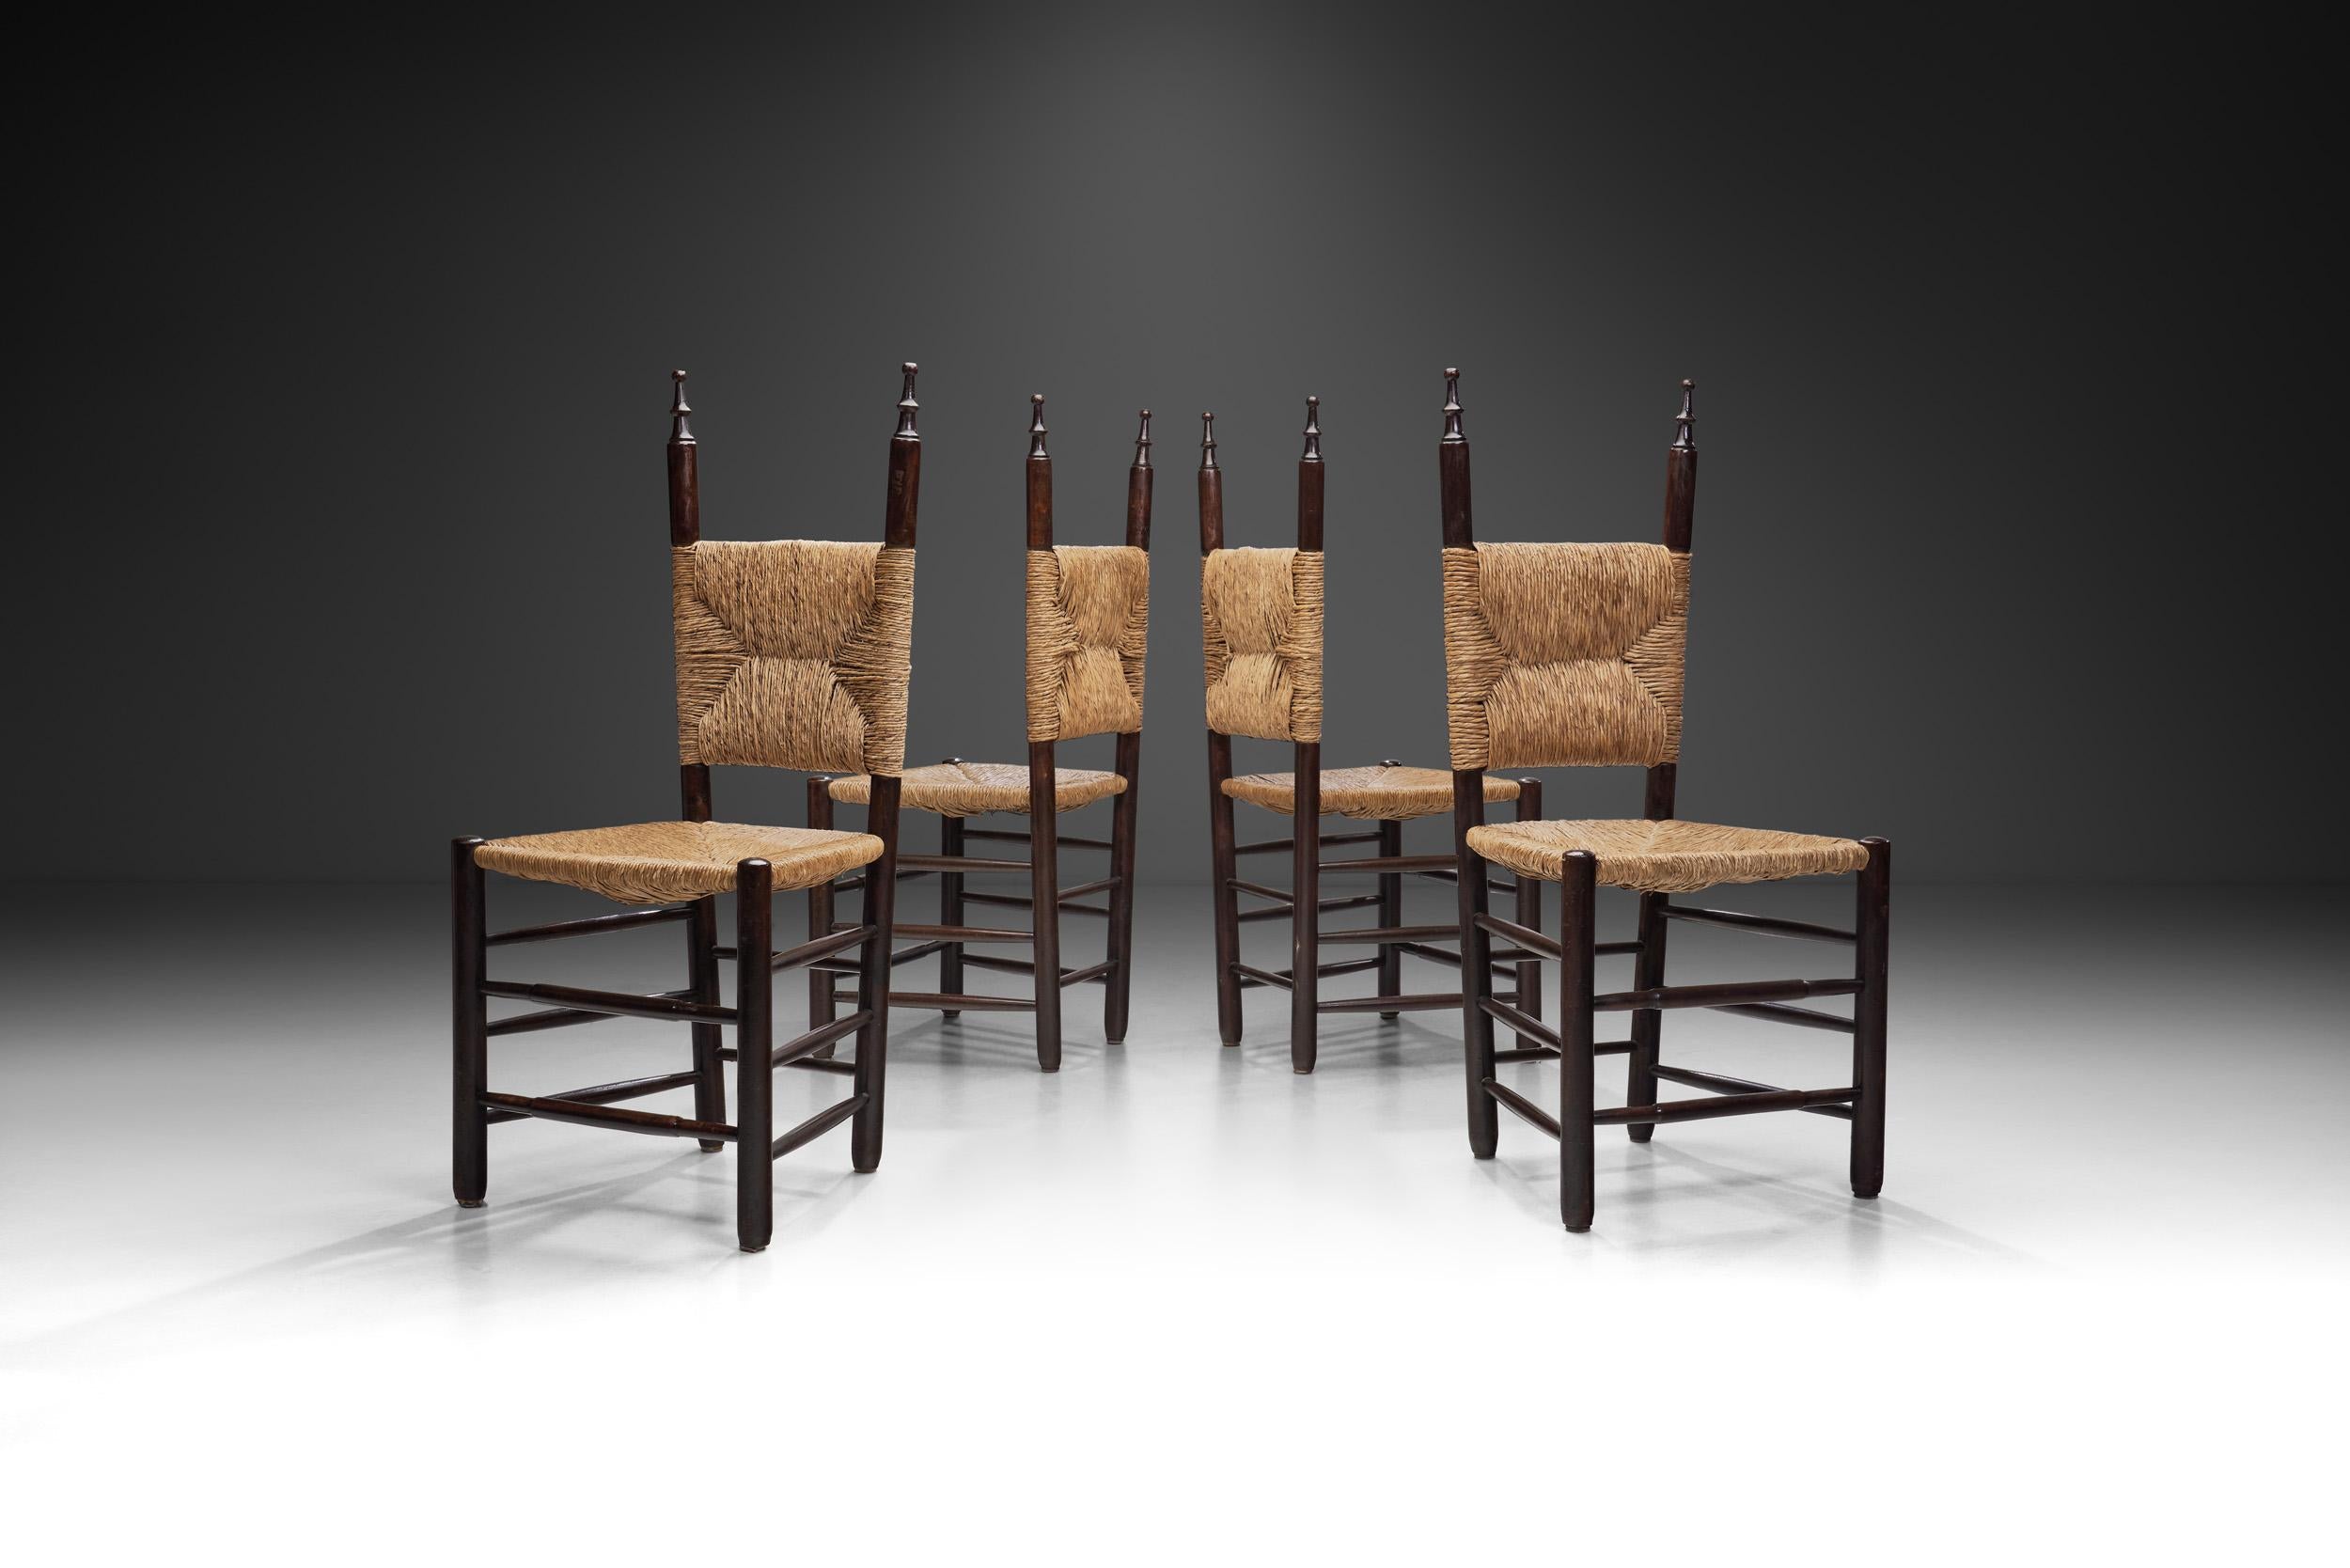 Ce charmant ensemble de chaises de salle à manger élégantes est né de la volonté de créer une esthétique organique et douillette dans sa simplicité, tout en ne faisant aucun compromis sur le confort et la fonctionnalité.

Cet ensemble de quatre